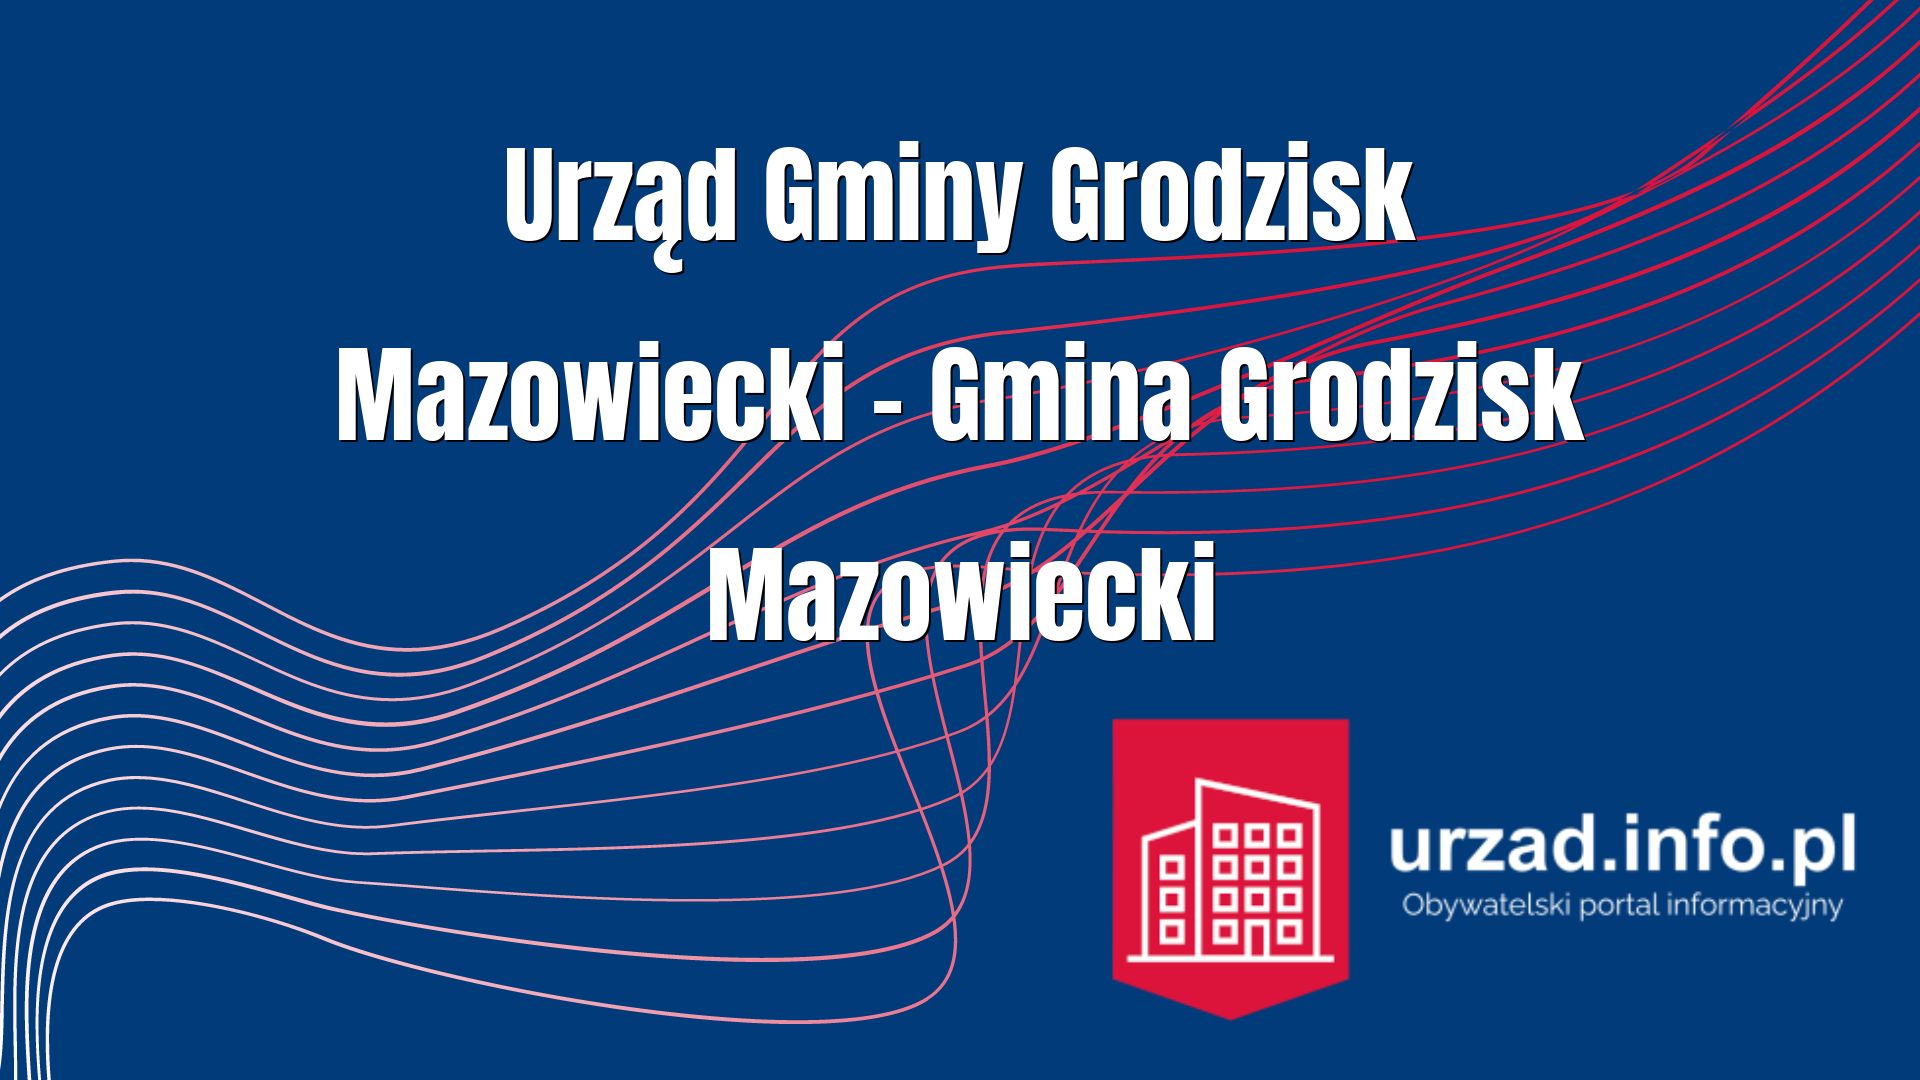 Urząd Gminy Grodzisk Mazowiecki – Gmina Grodzisk Mazowiecki